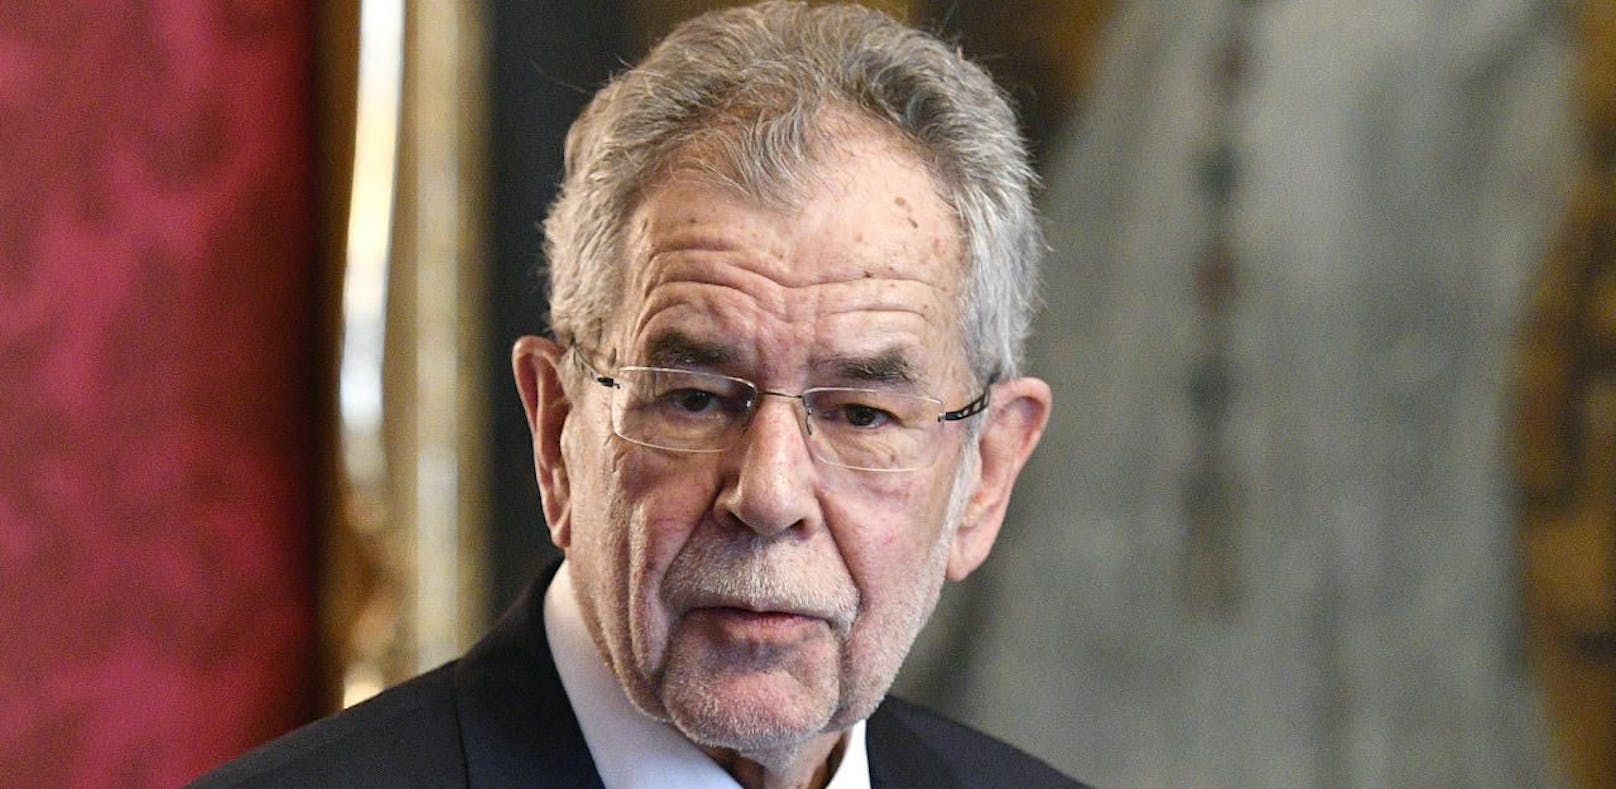 Österreichs Bundespräsident Alexander Van der Bellen wird vor der Angelobung der neuen Regierung gewarnt.